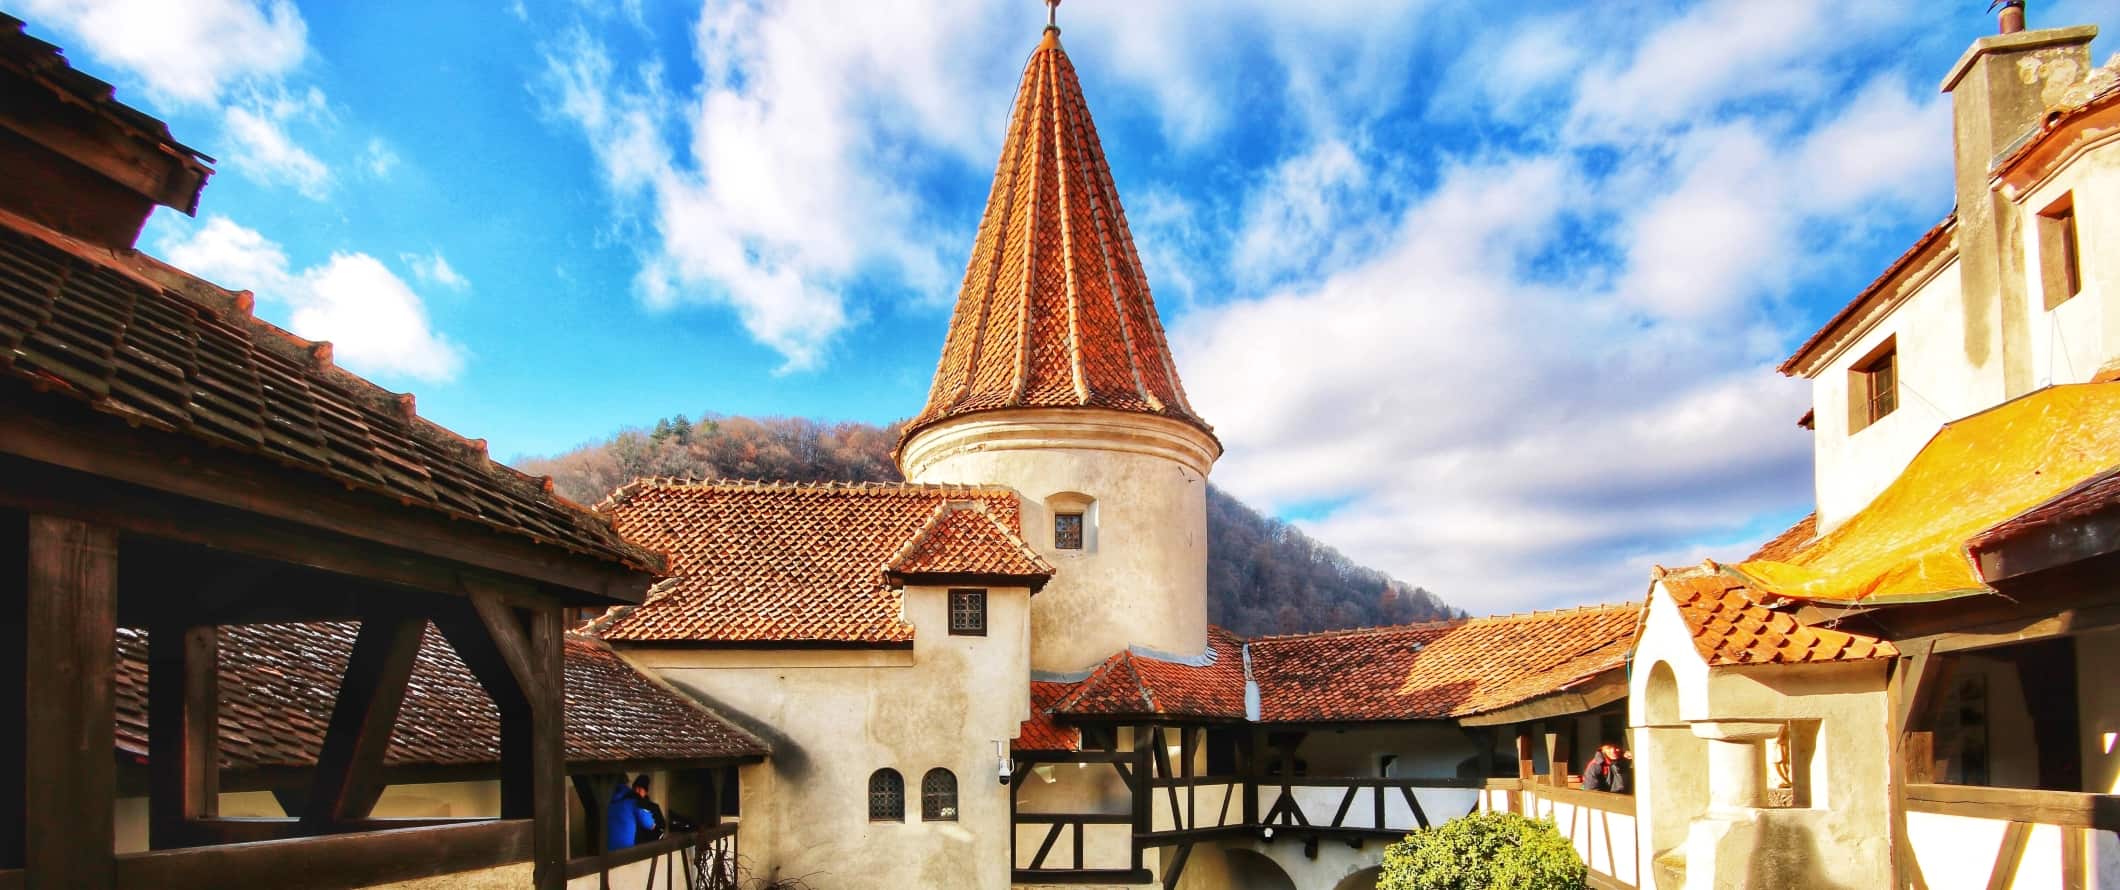 Torres e telhados de torre com telhas vermelhas no castelo de Bran em Brasov, Romênia.